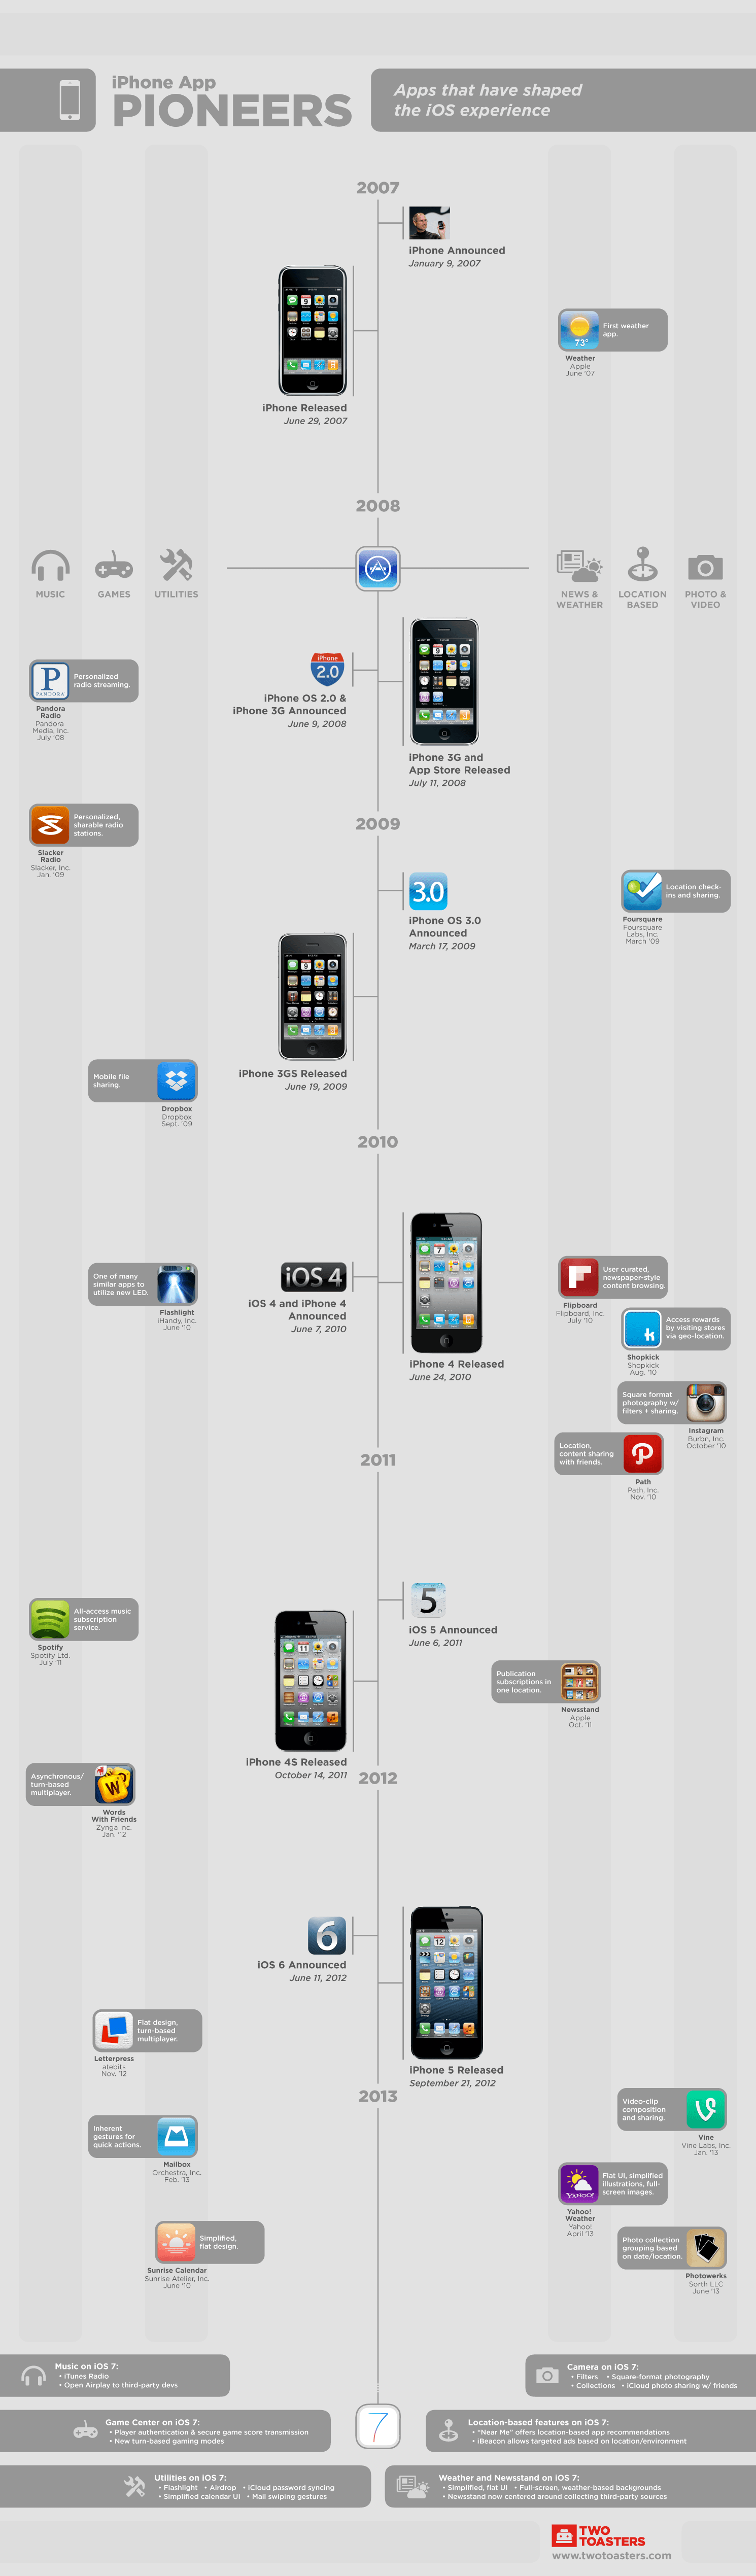 La evolución del iPhone e iOS #Infografía #Apple #Smartphones